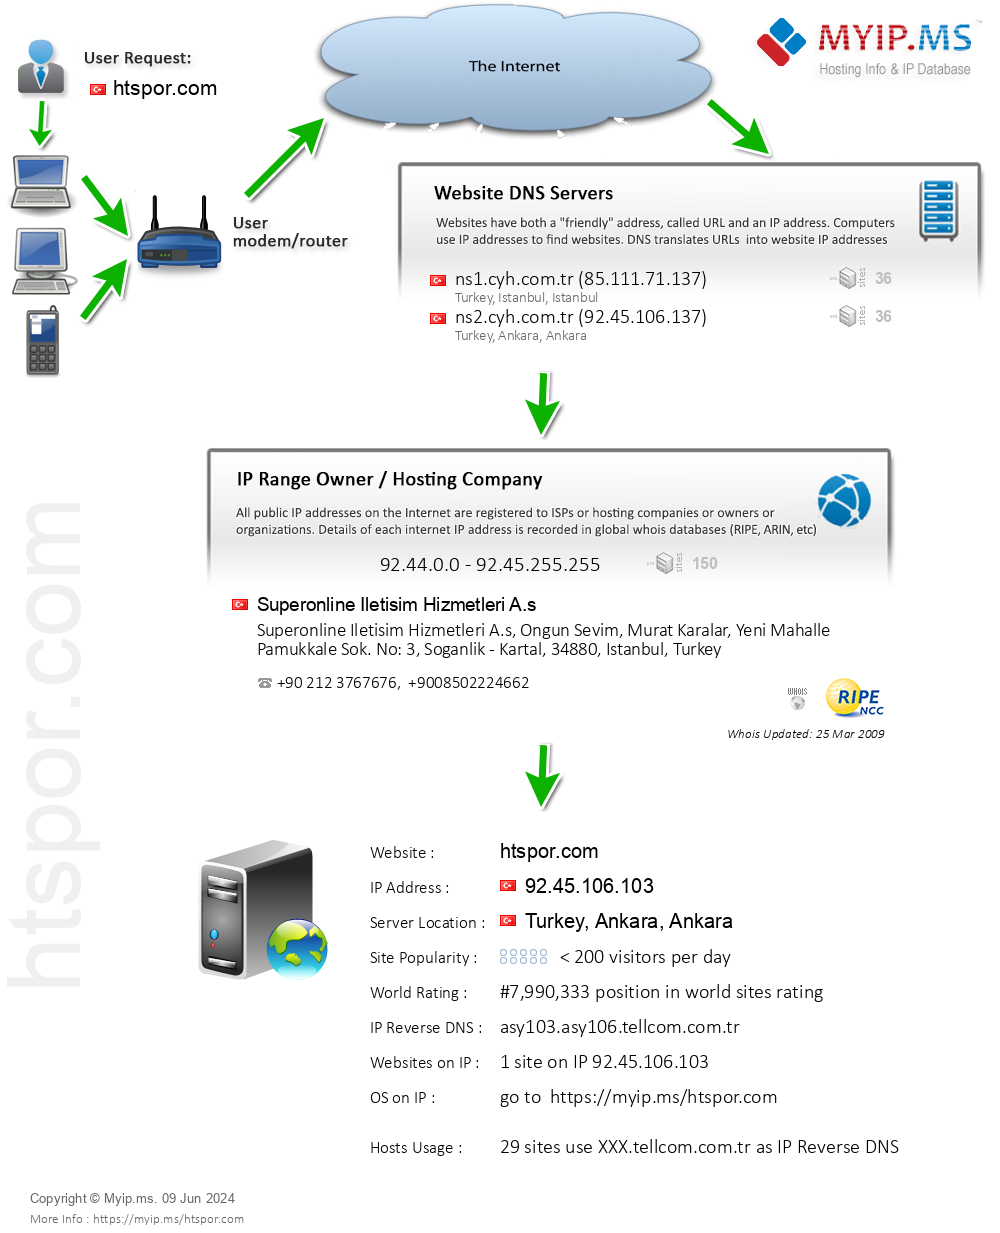 Htspor.com - Website Hosting Visual IP Diagram